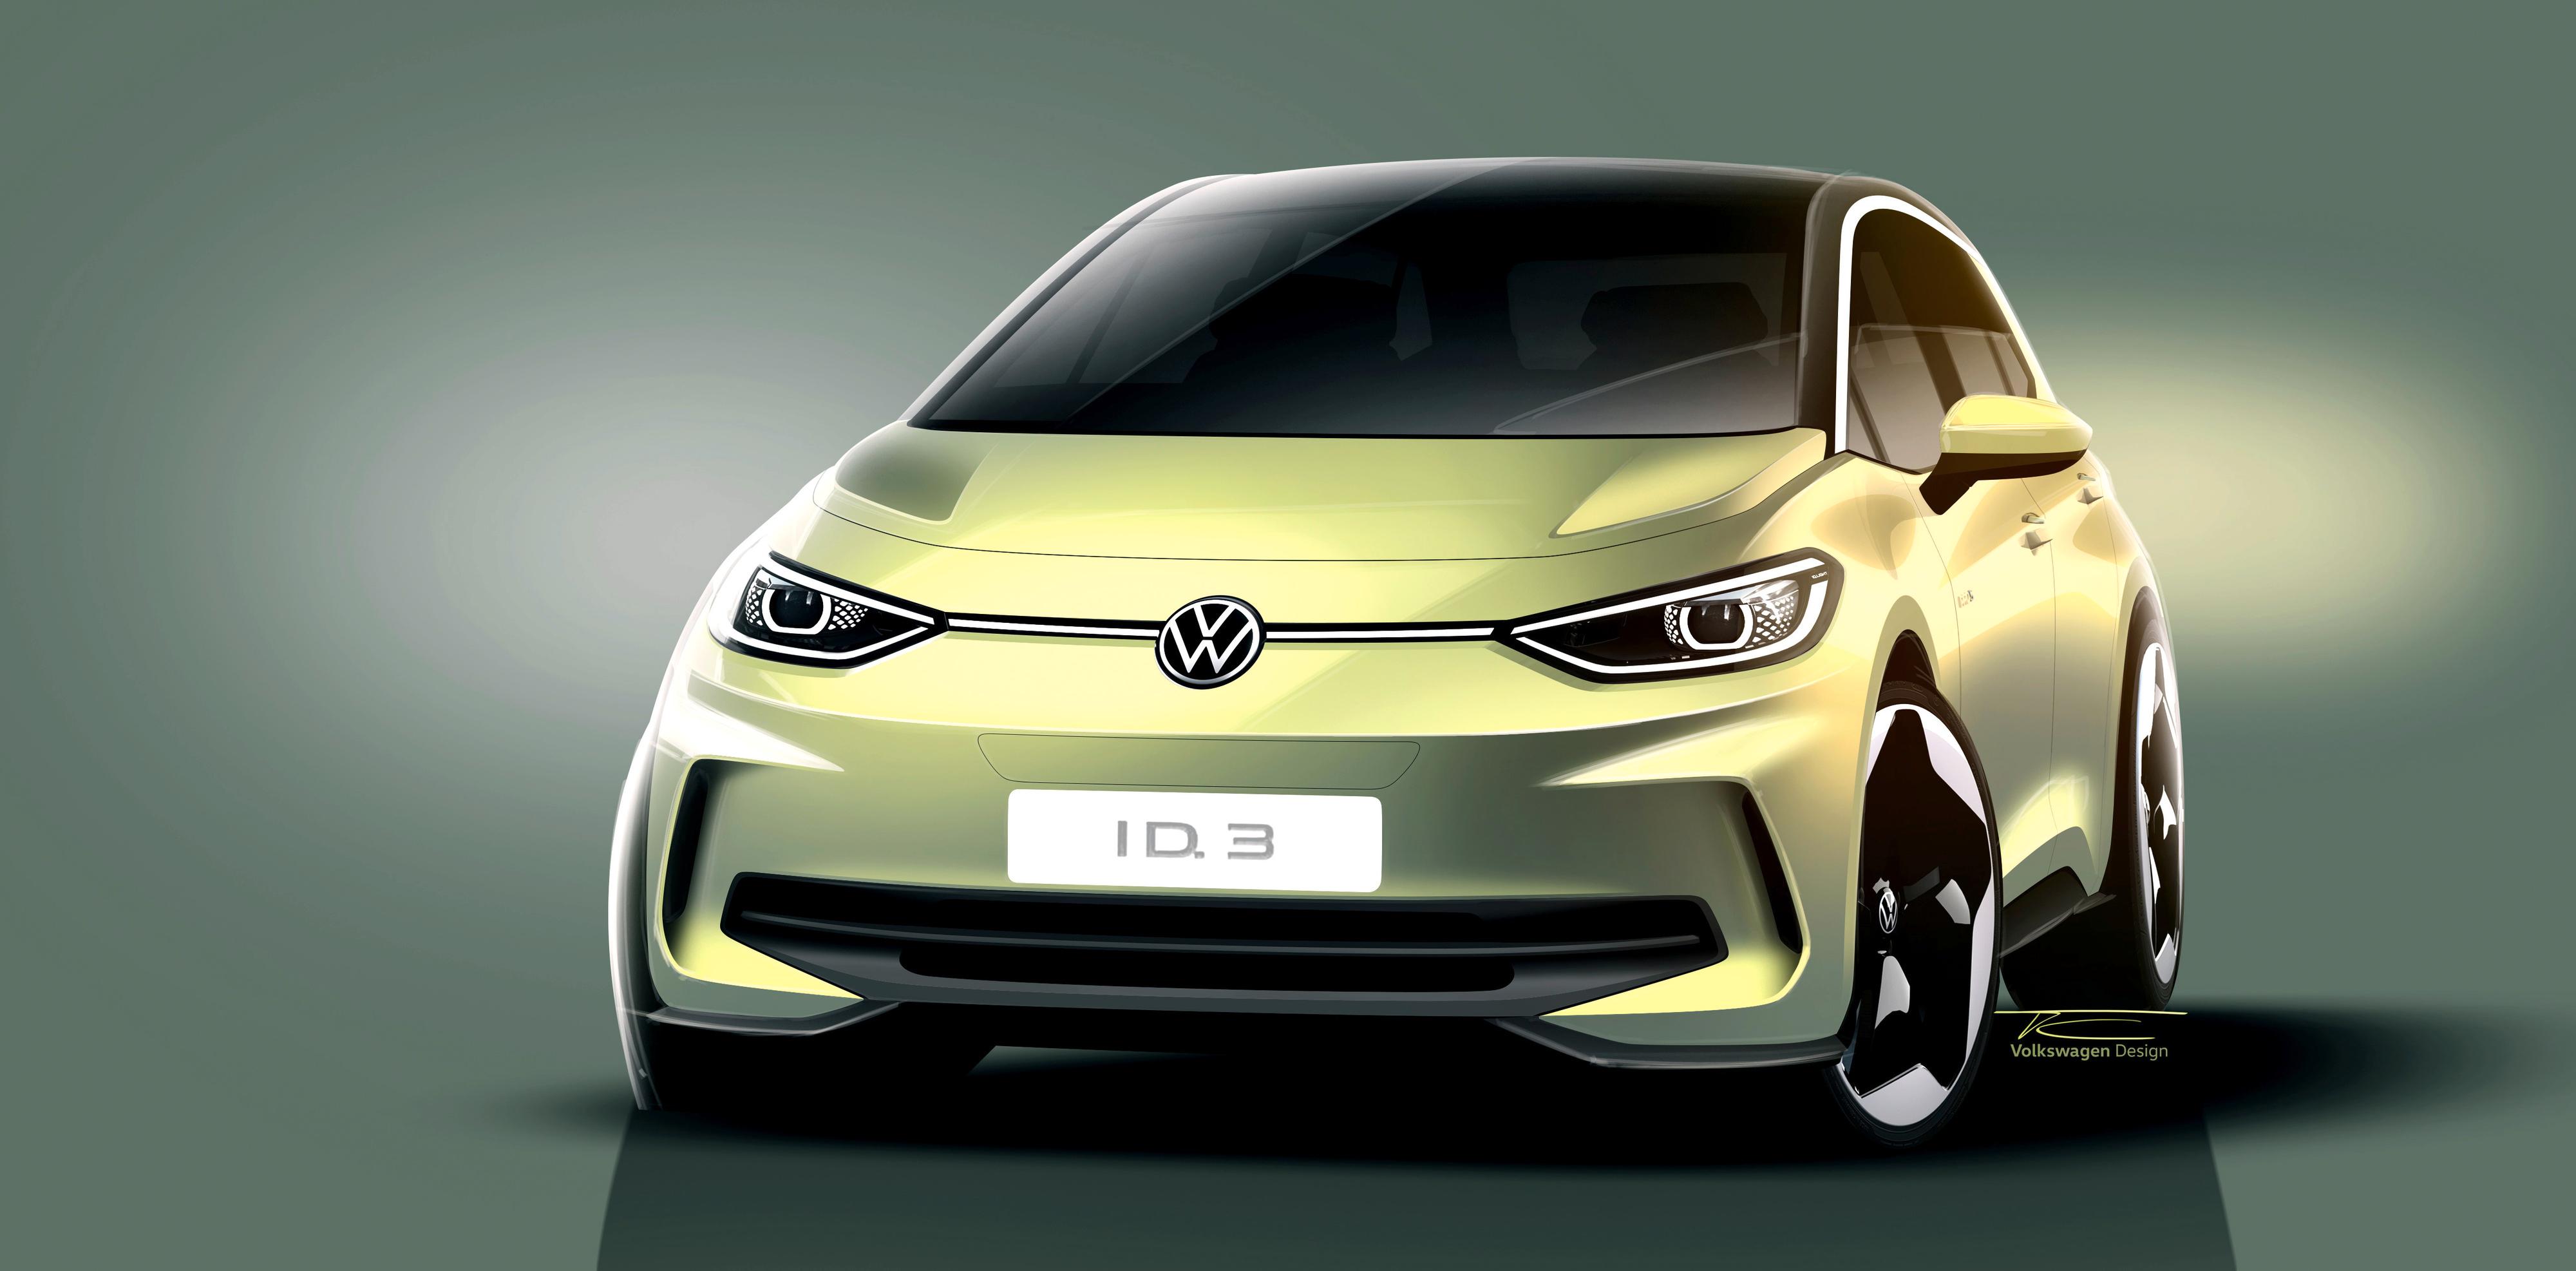 Volkswagen varsler ny ID.3